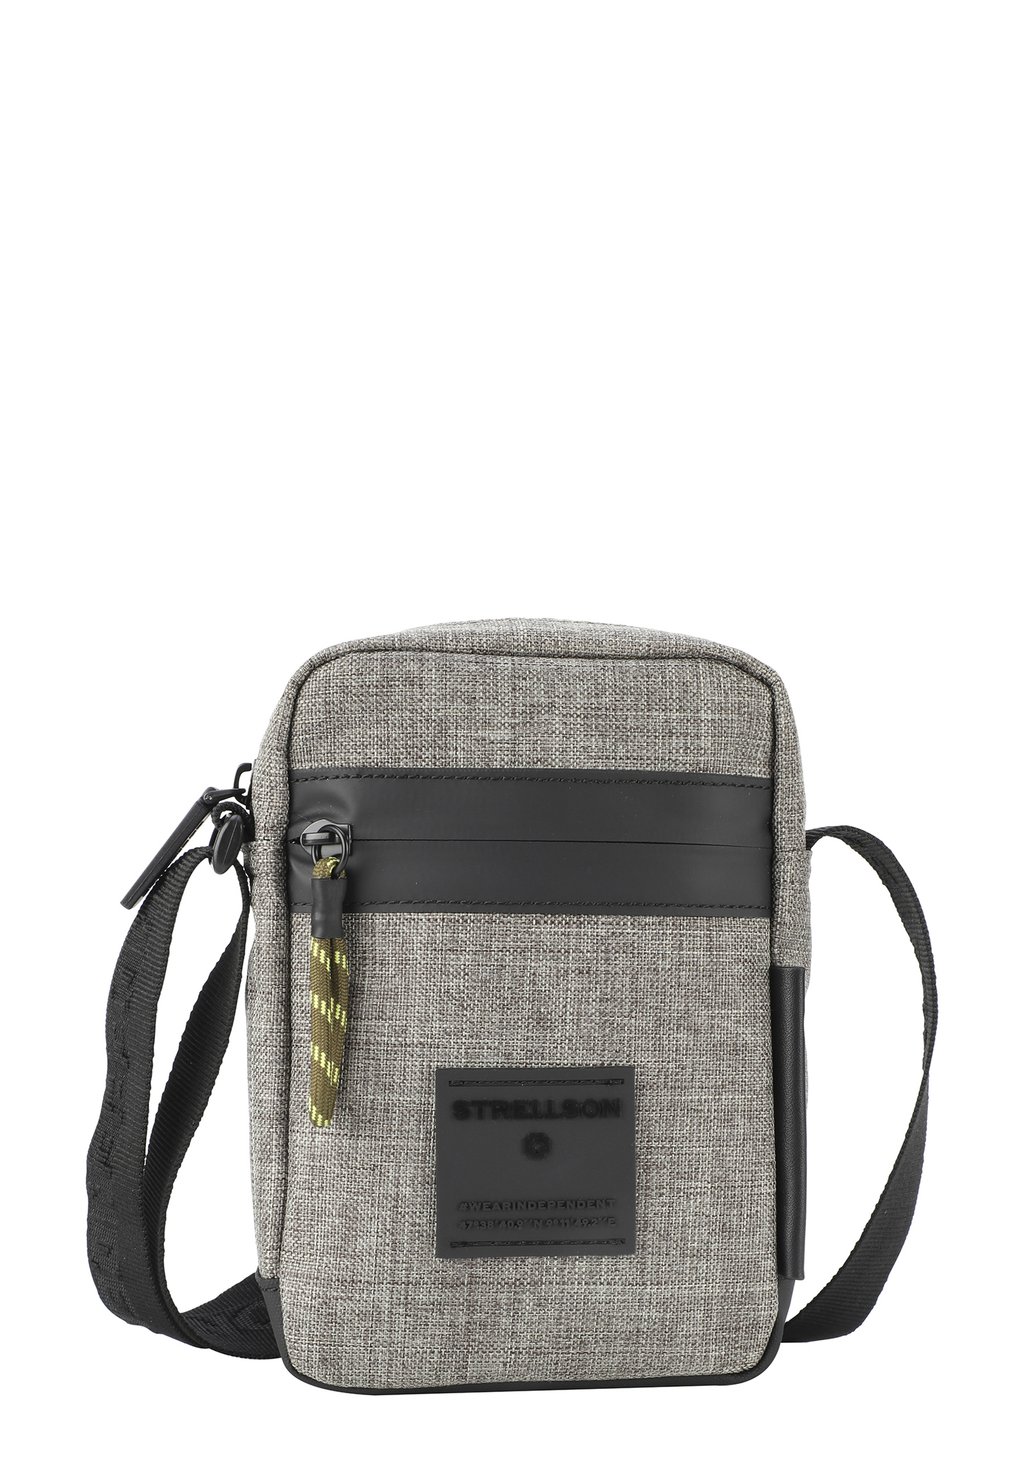 Сумка через плечо Strellson Premium, цвет khaki сумка через плечо strellson premium цвет darkgrey